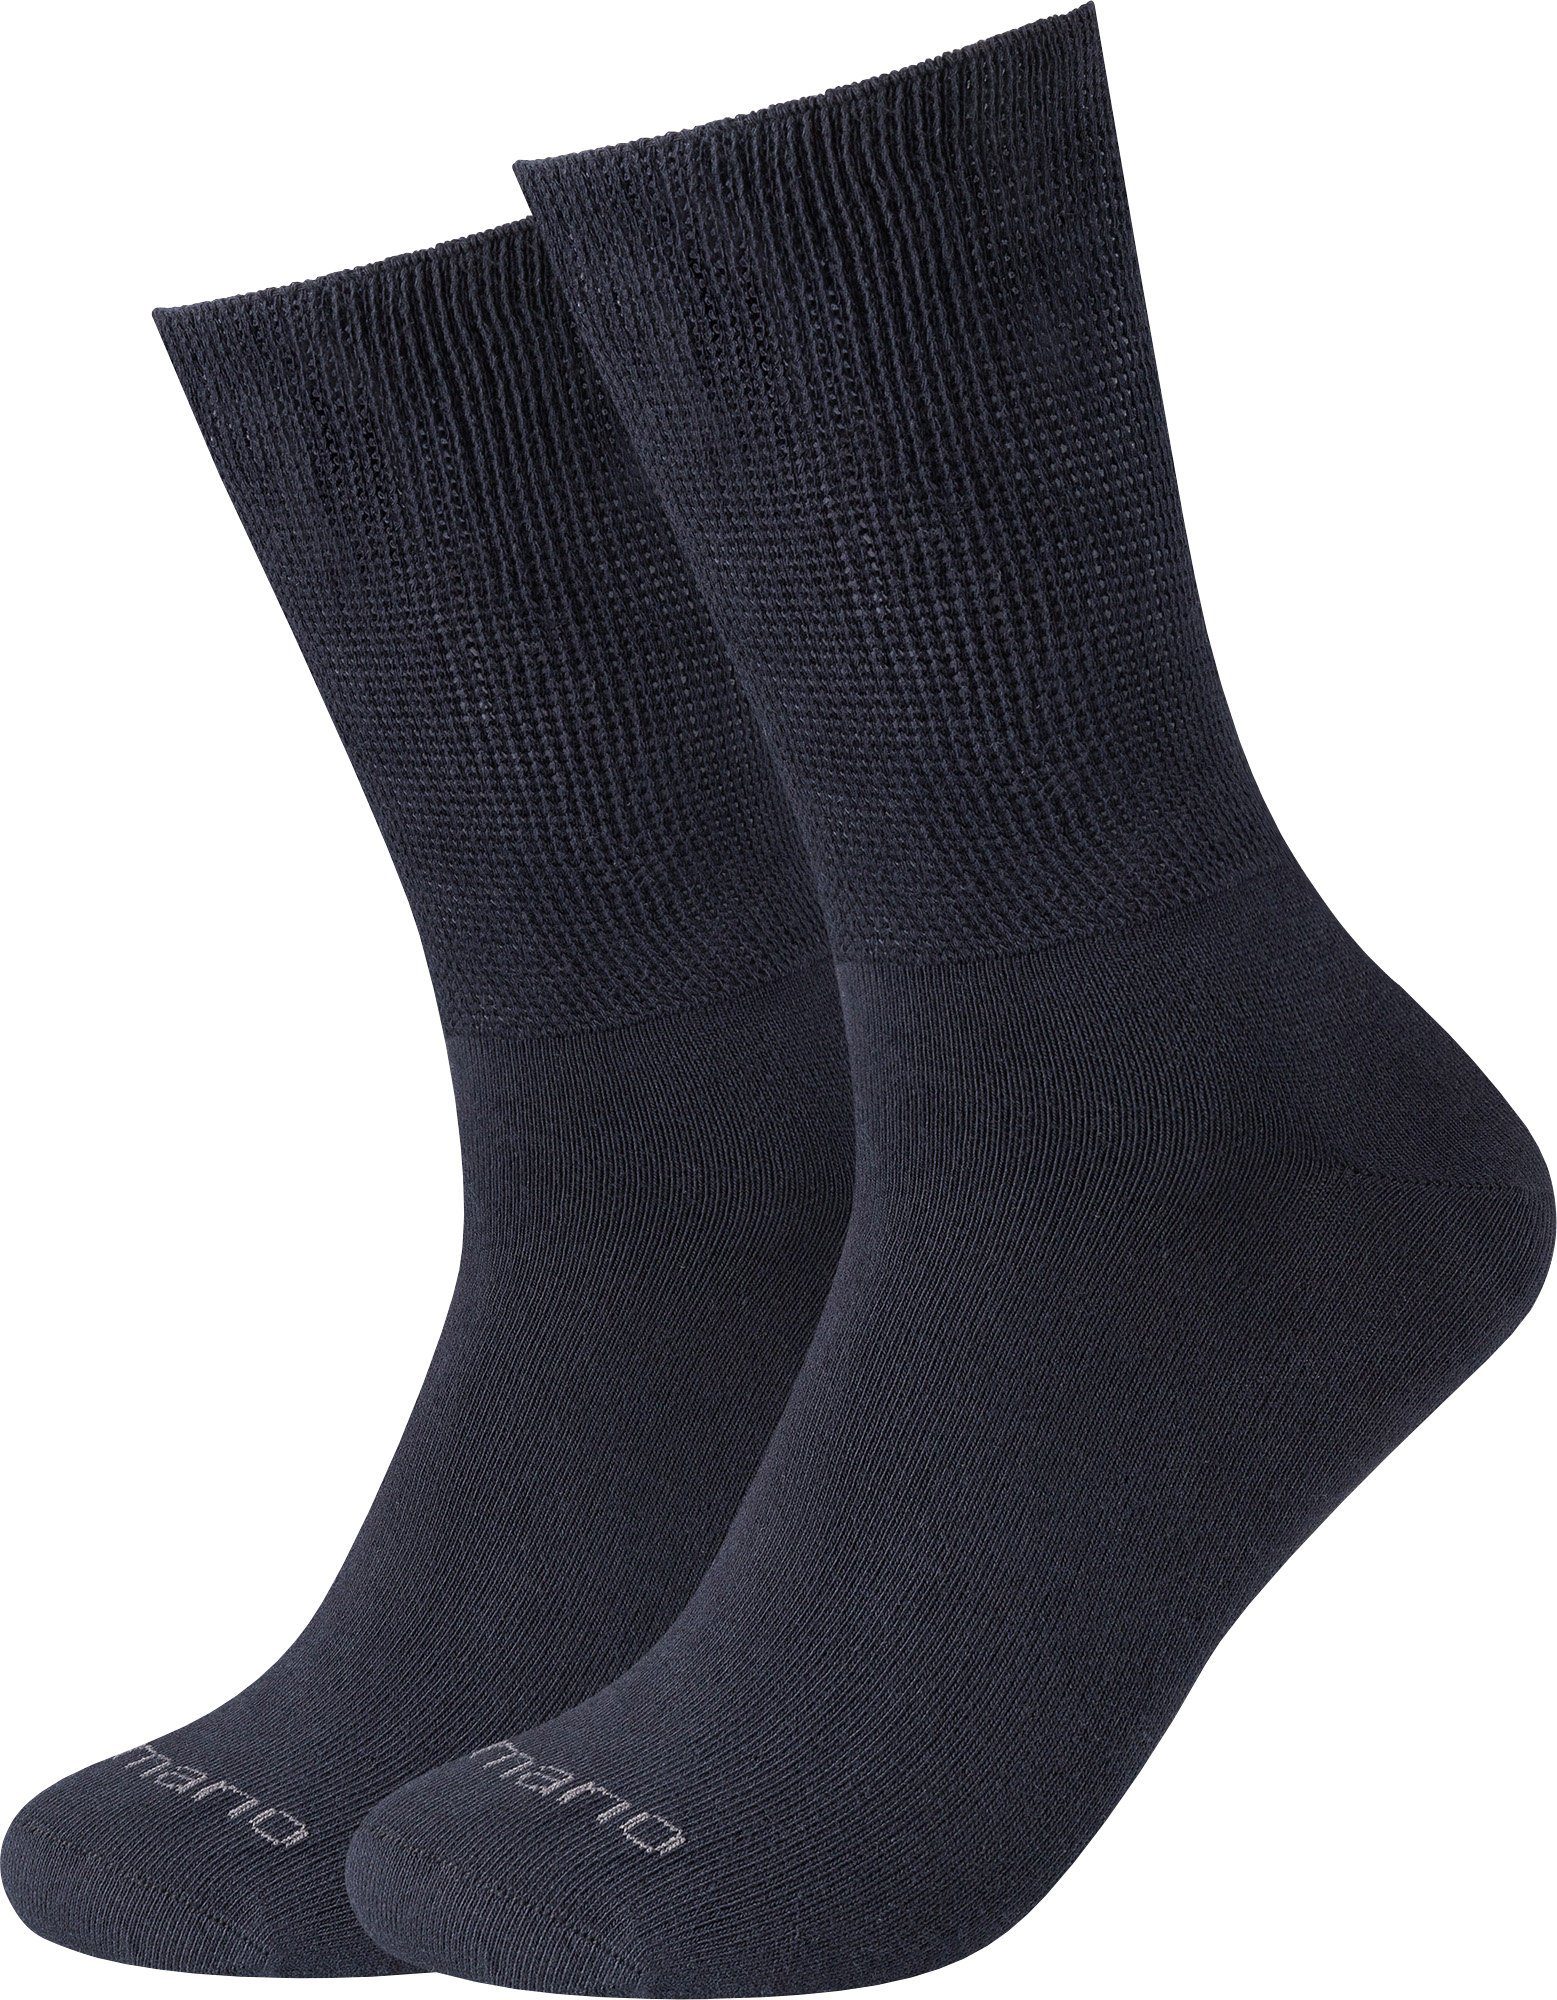 Softbund marine mit Camano 2 Uni Paar Socken Unisex-Socken